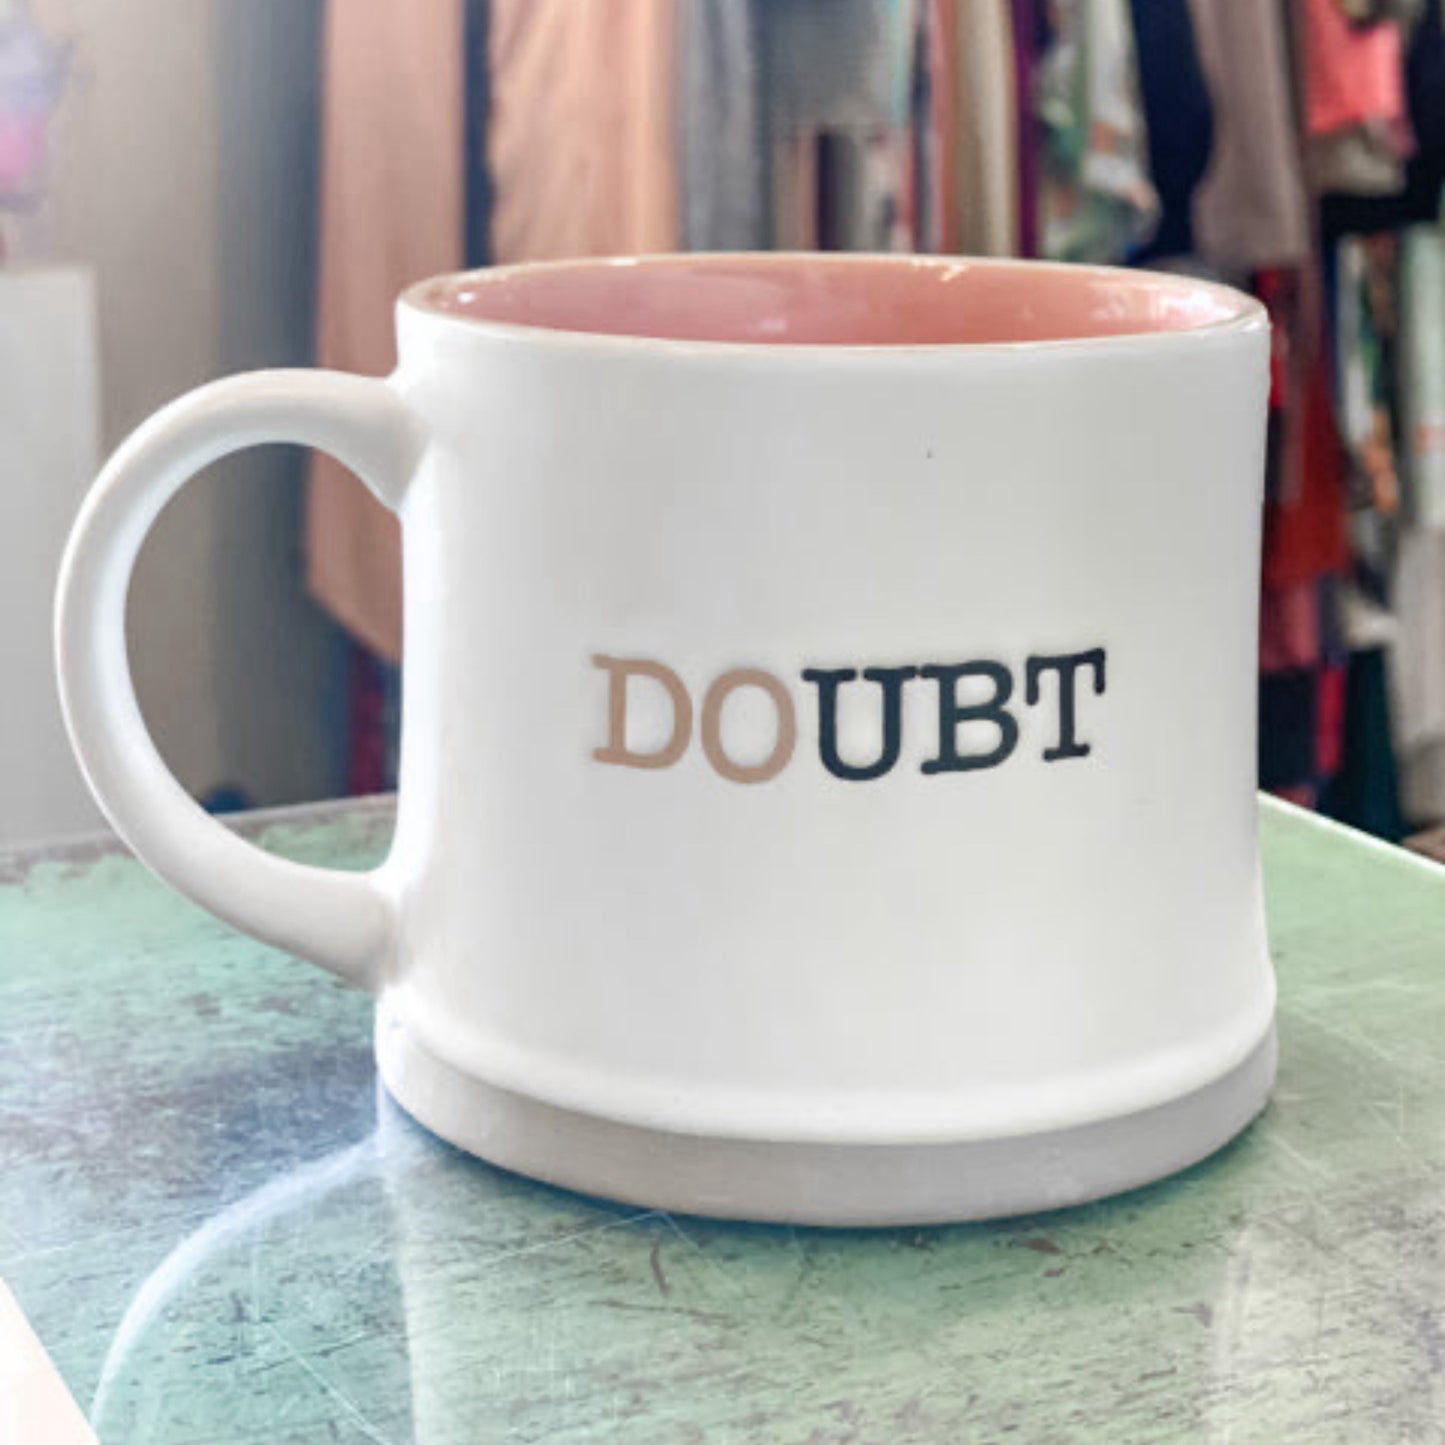 Doubt Mug